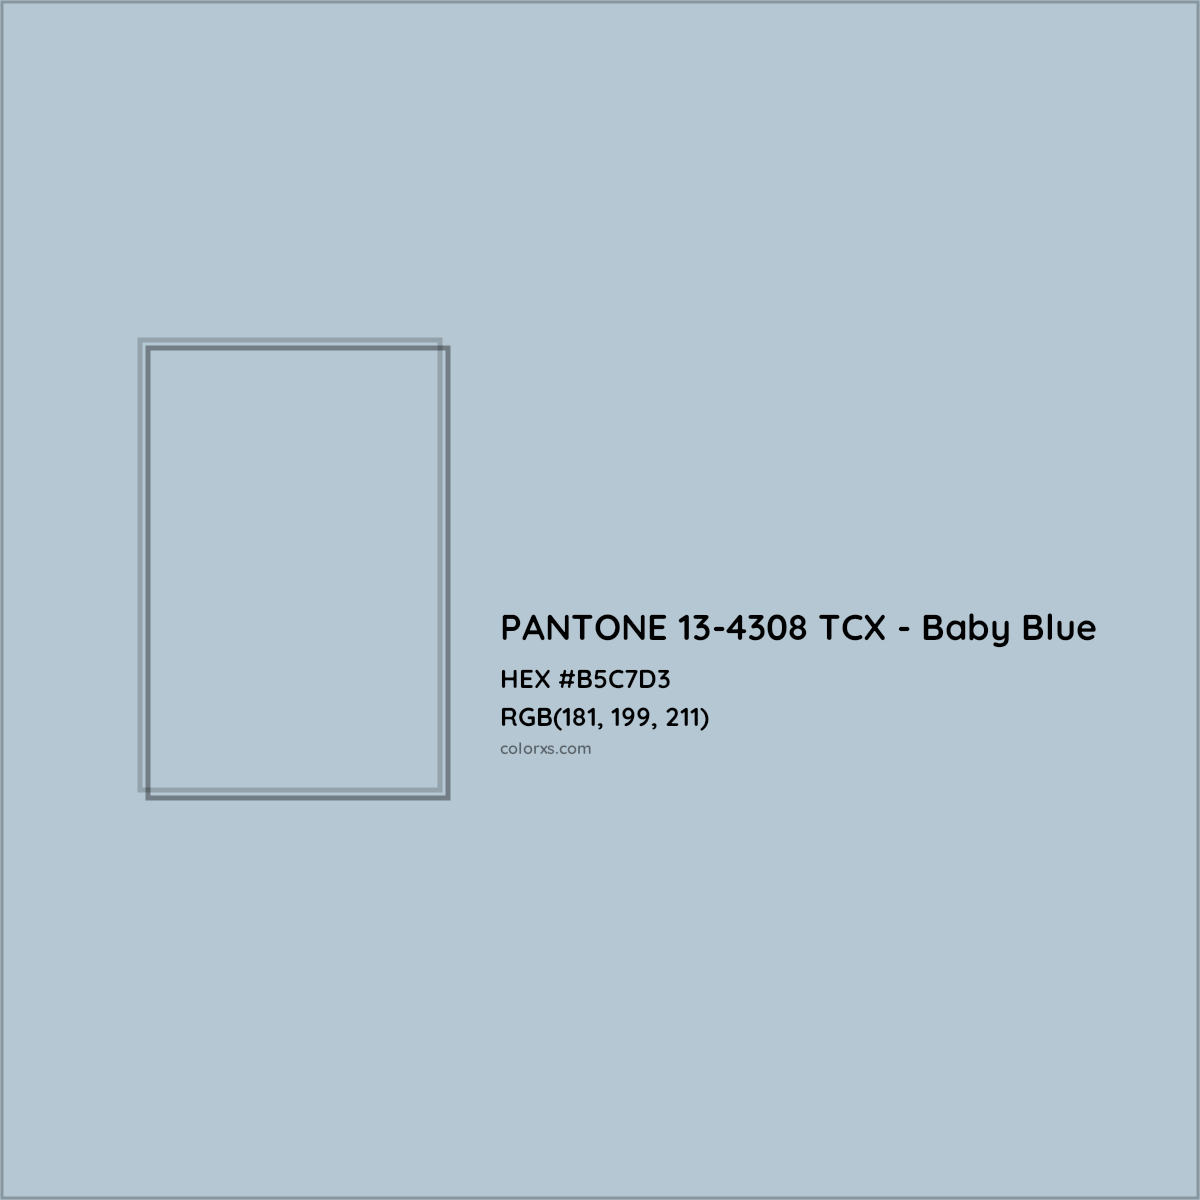 HEX #B5C7D3 PANTONE 13-4308 TCX - Baby Blue CMS Pantone TCX - Color Code